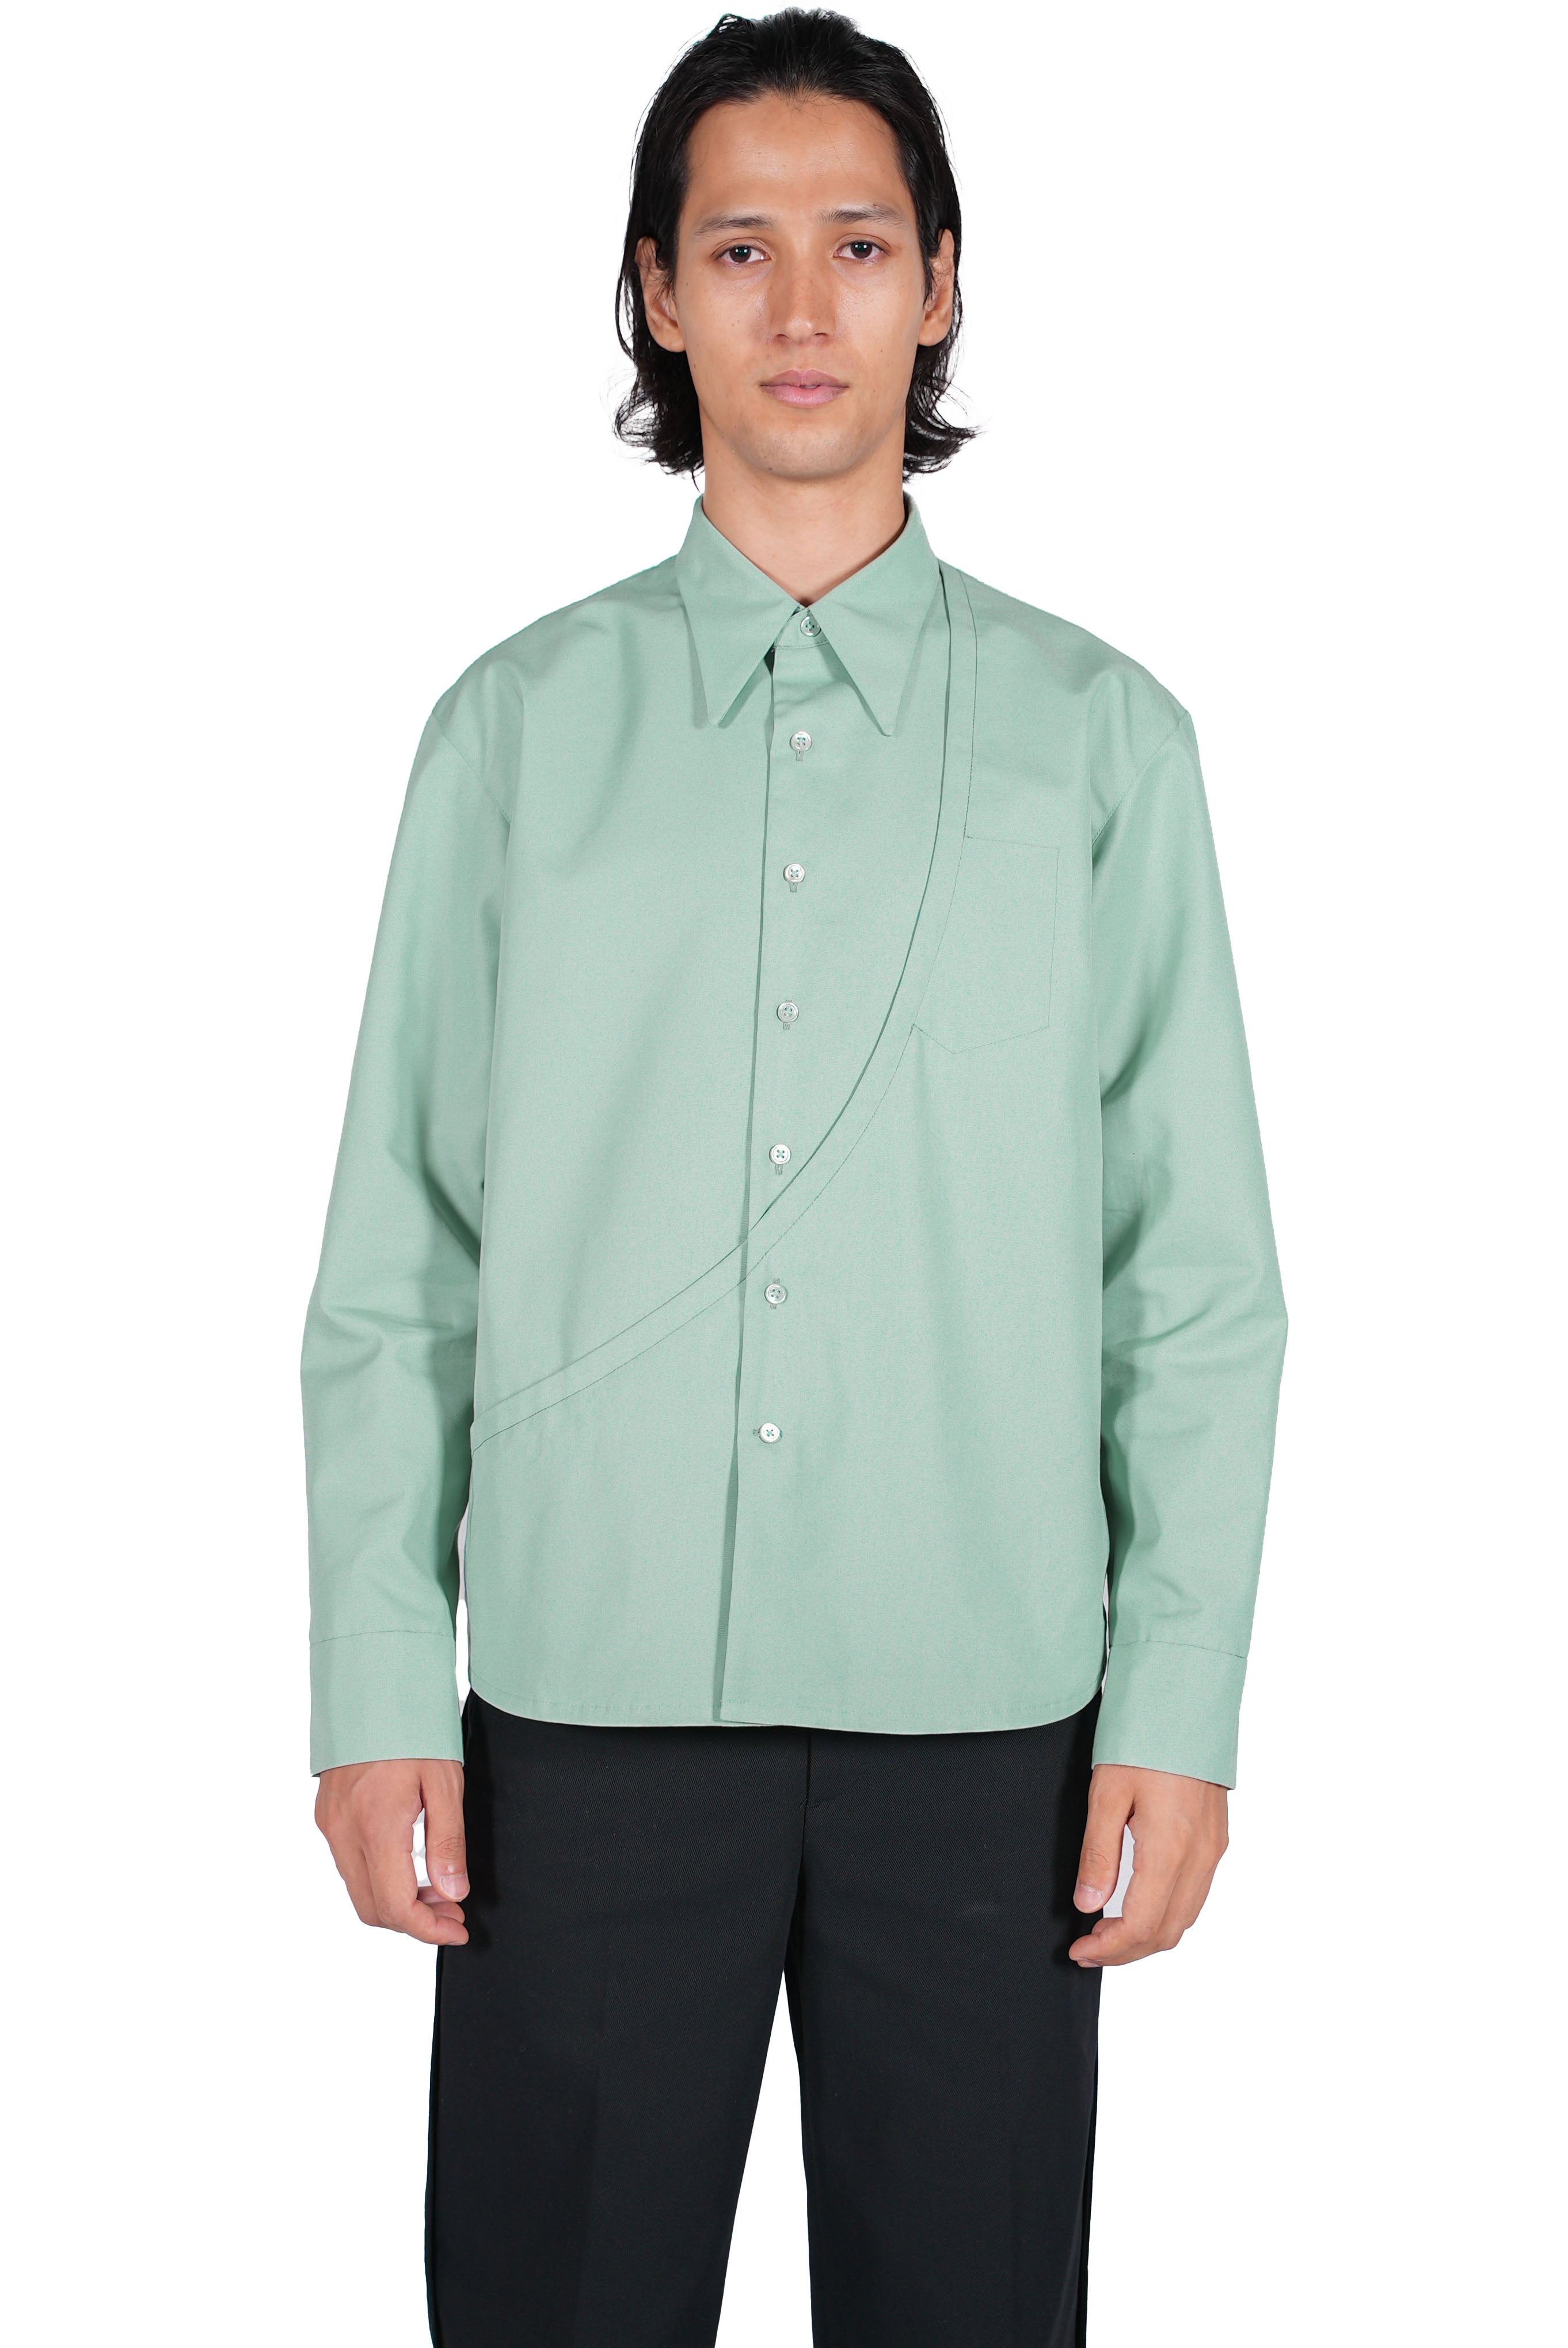 18,500円ours strong 002 green shirt jacket